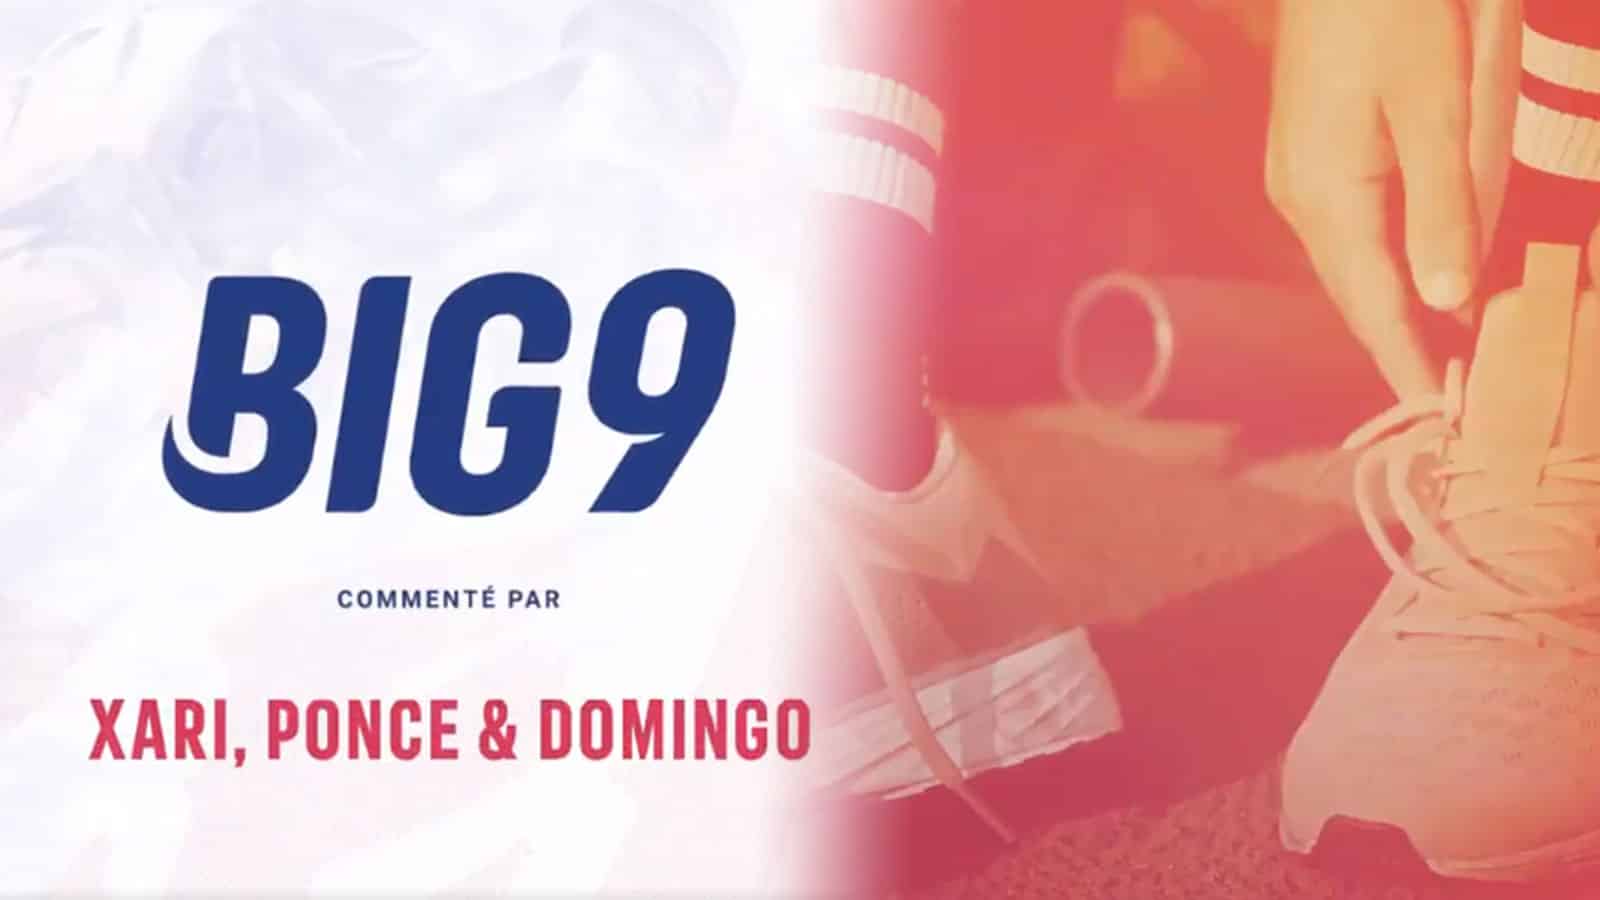 Domingo organise une nouvelle compétition sportive entre streamers, Big 9